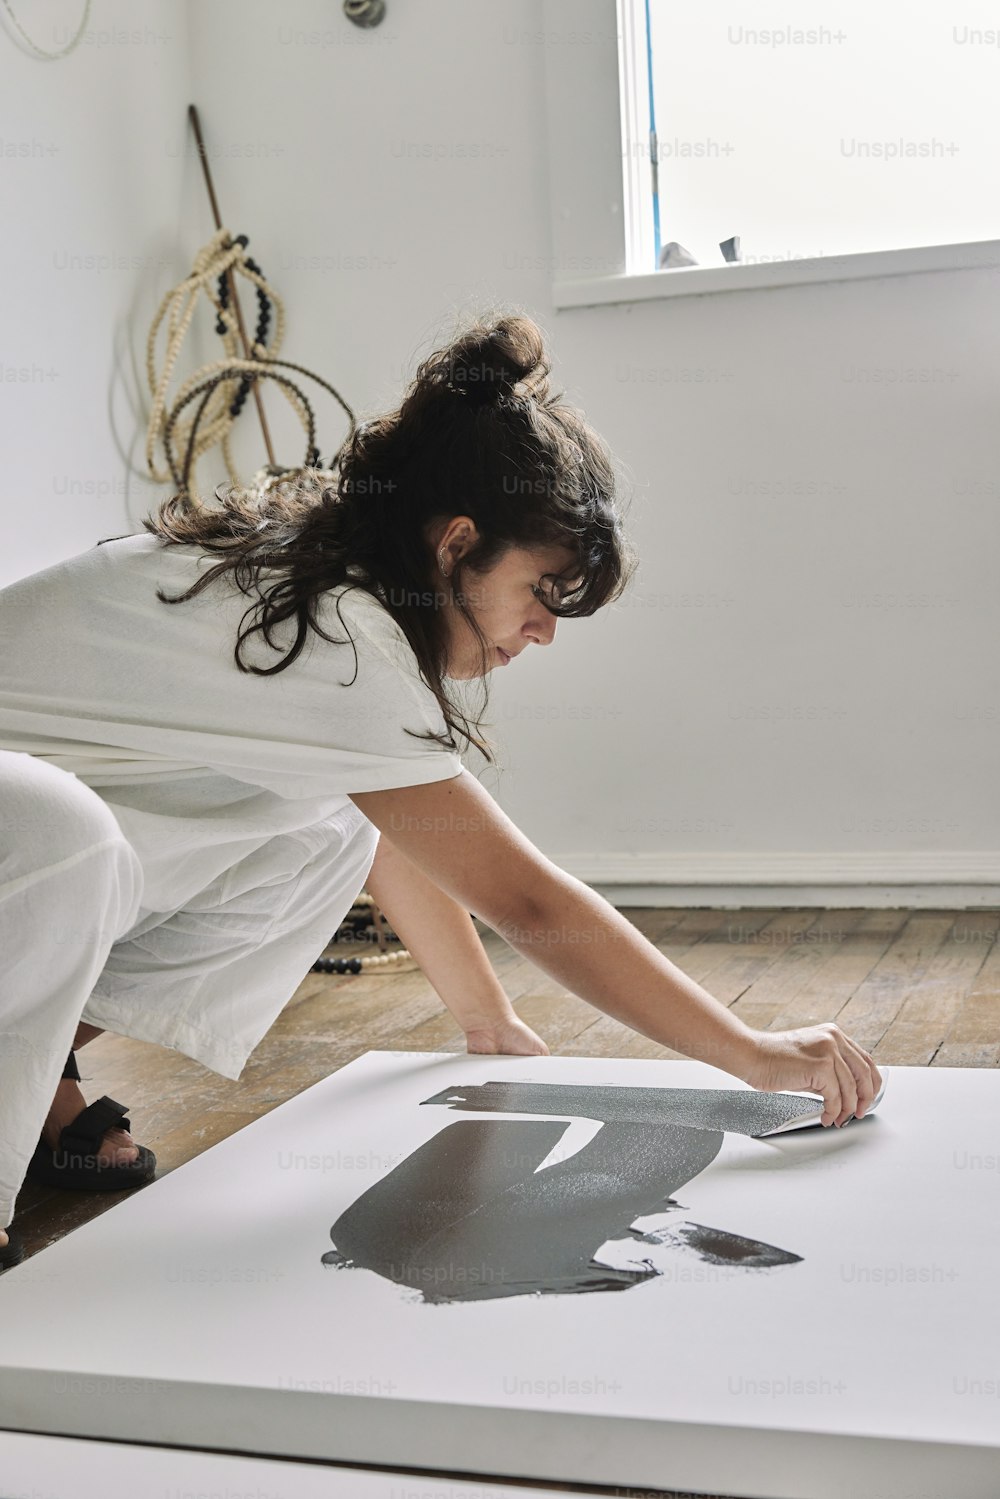 Una mujer con un vestido blanco está pintando un cuadro